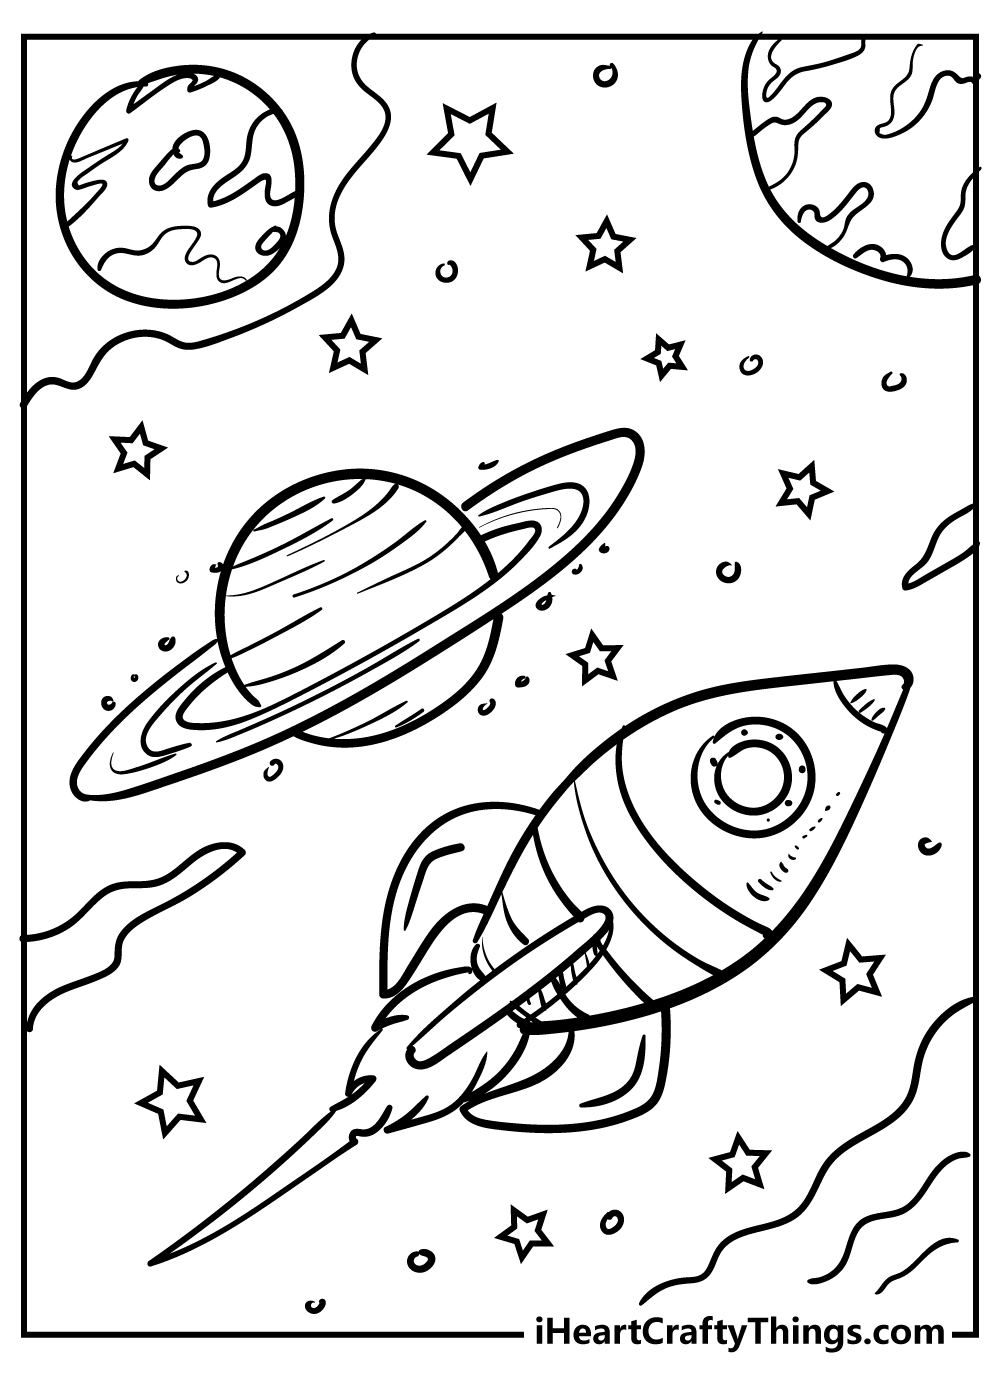 Раскраска космос 4 5 лет. Космос раскраска для детей. Раскраска. В космосе. Раскраска космос и планеты для детей. Космические раскраски для детей.